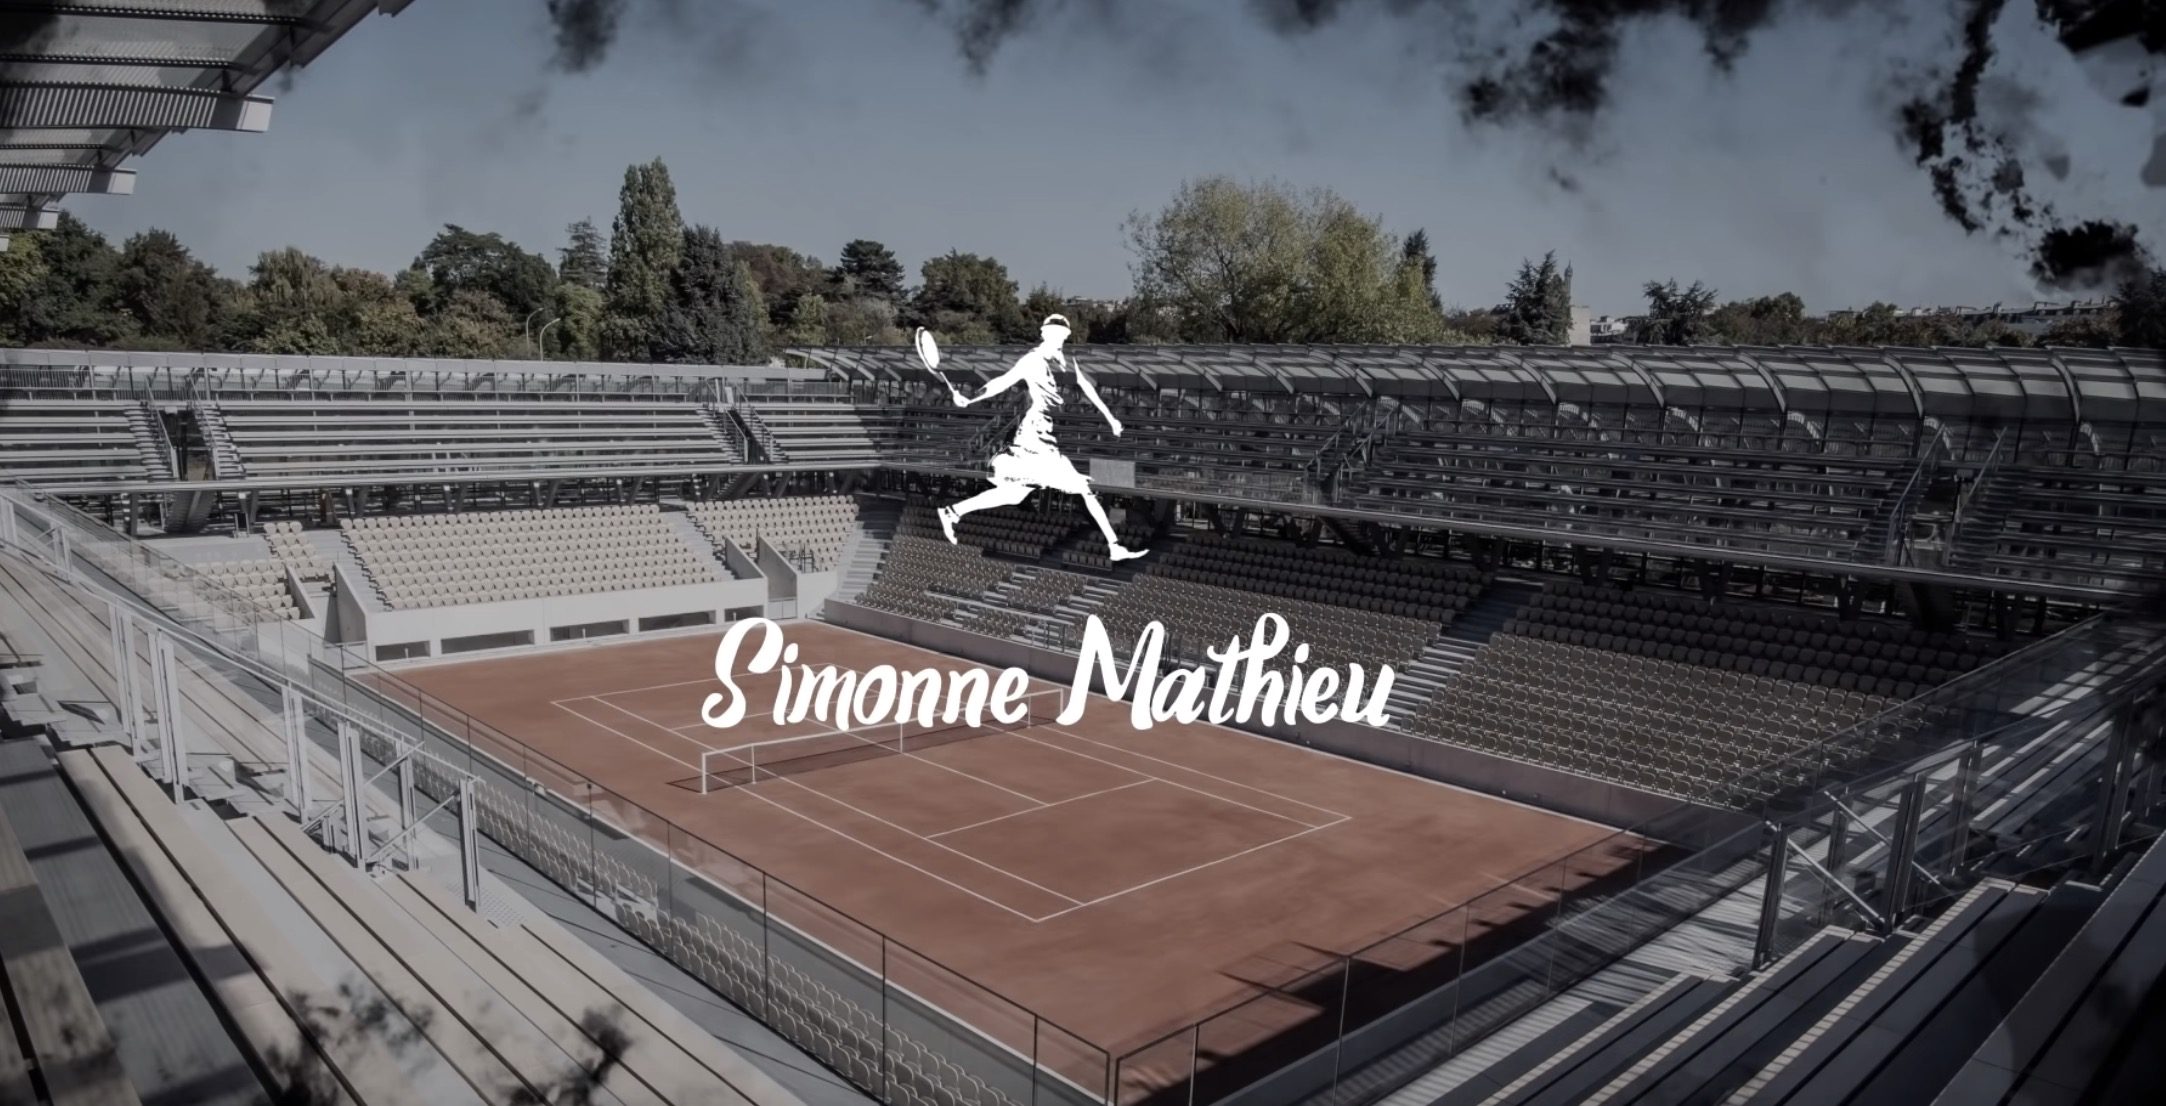 Court Simonne Mathieu à Roland Garros, un hommage particulier